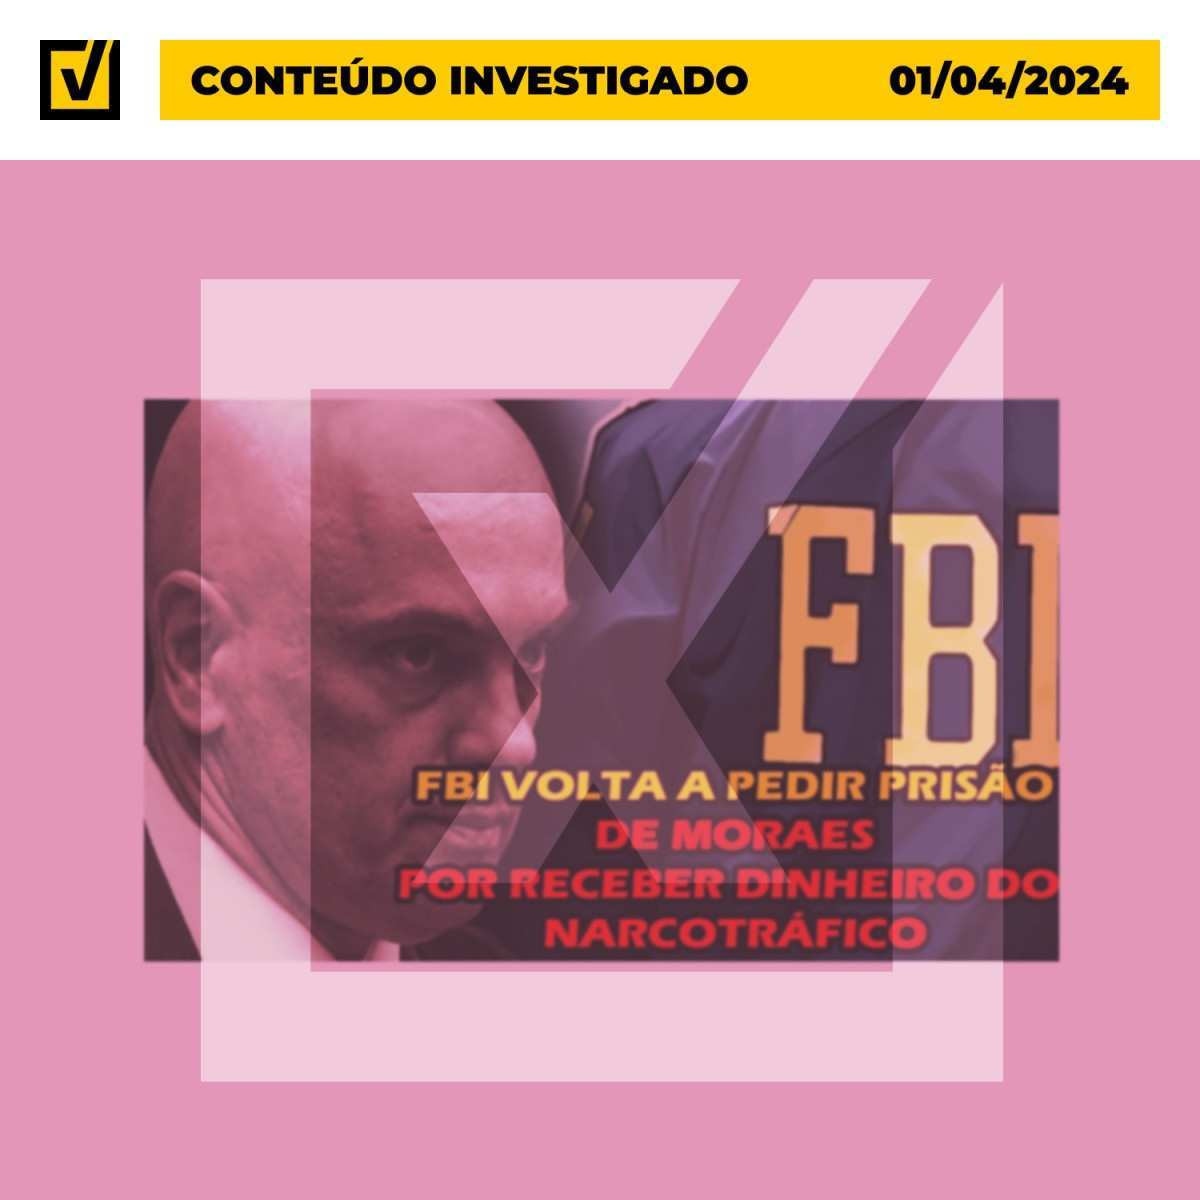 Ao contrário do que diz vídeo, é falso que FBI tenha investigado Alexandre de Moraes por envolvimento com narcotráfico